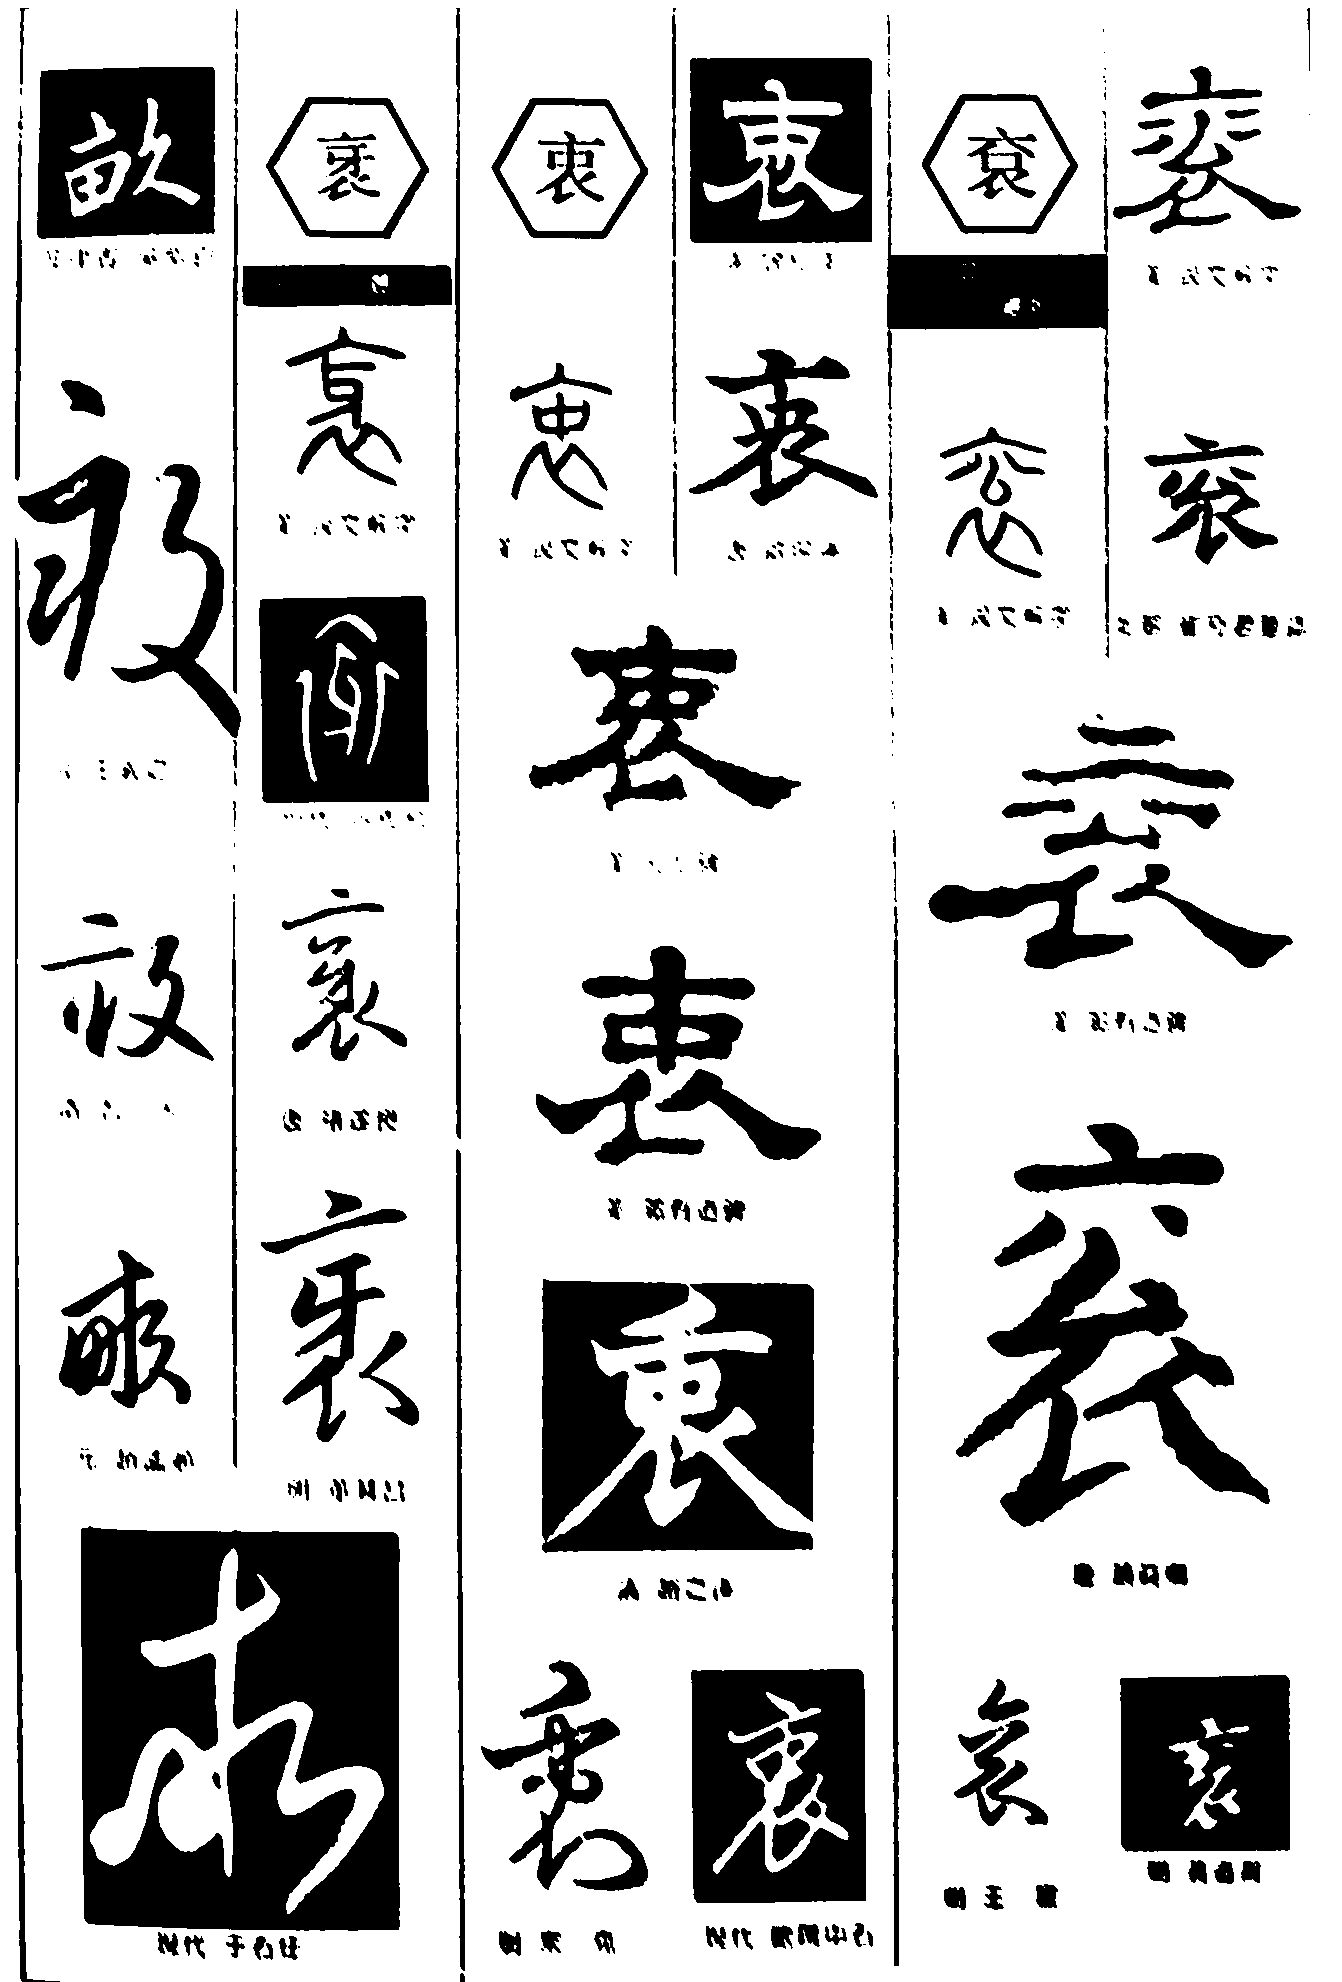 衺衷袞 艺术字 毛笔字 书法字 繁体 标志设计 